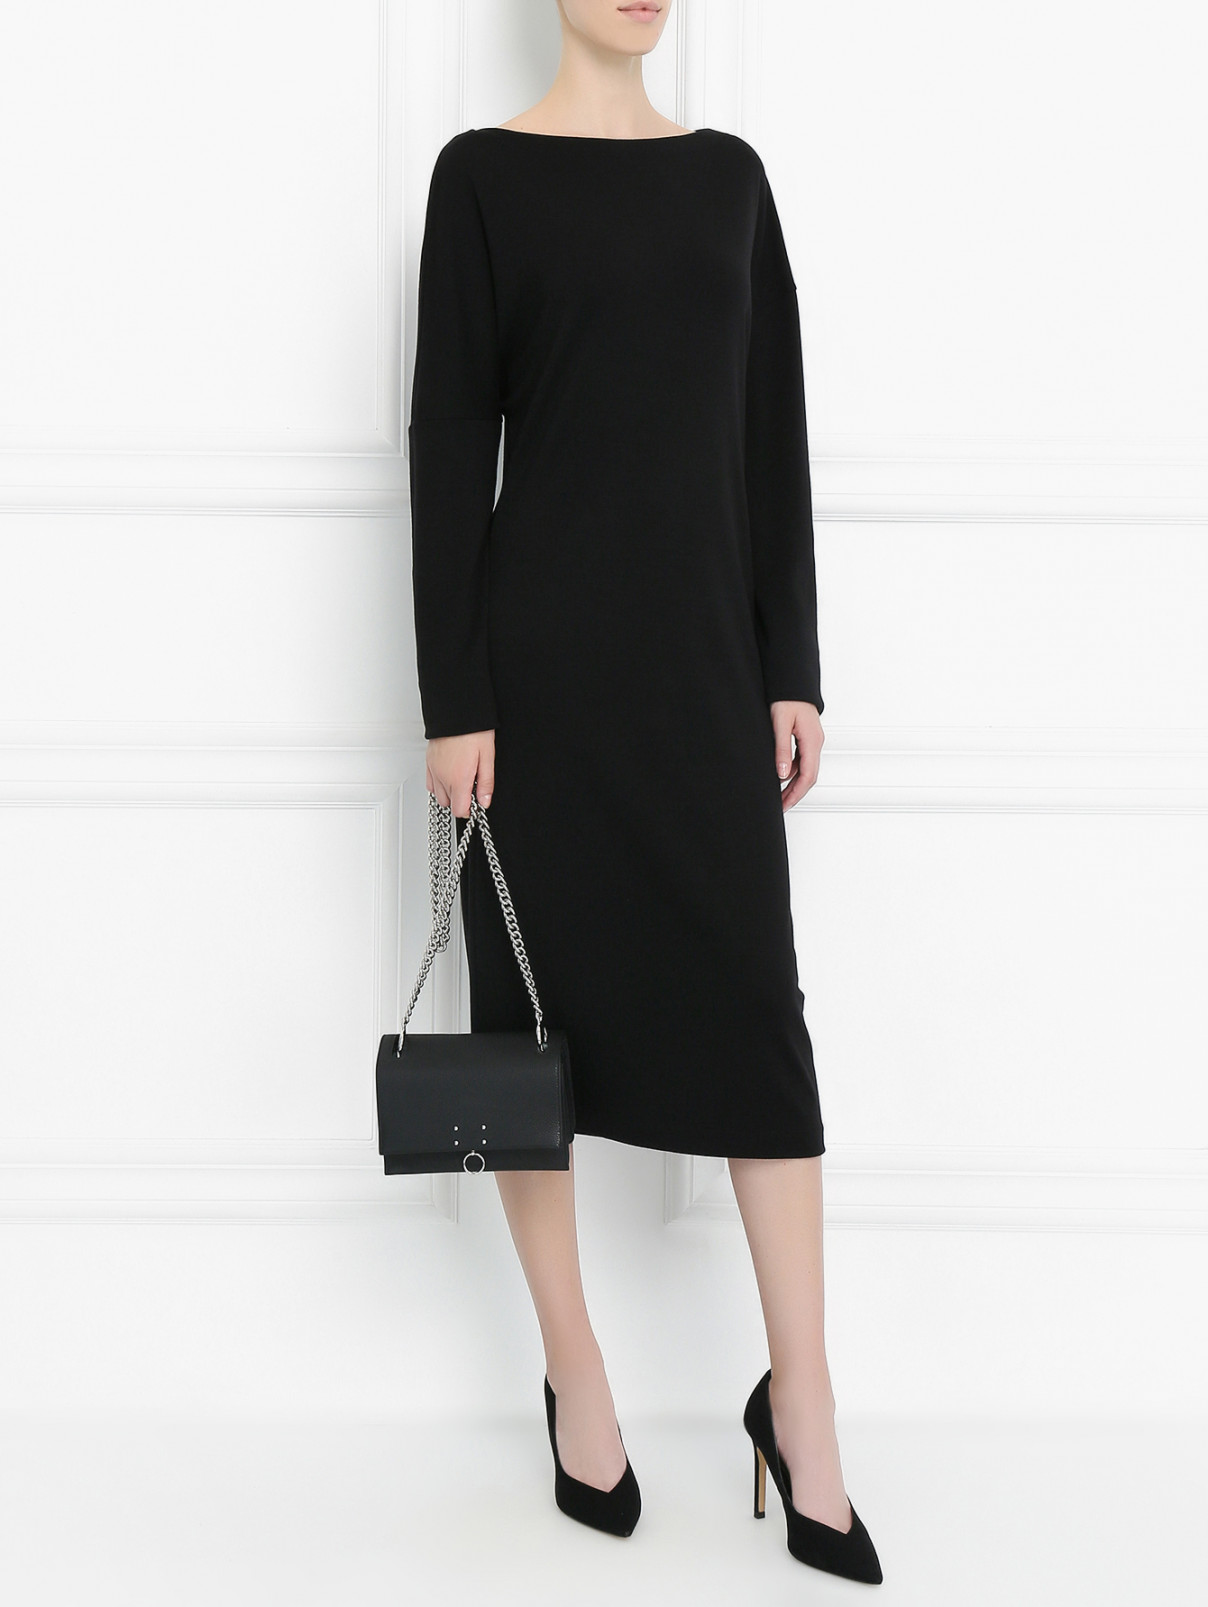 Платье свободного кроя из шерсти и кашемира Jil Sander  –  Модель Общий вид  – Цвет:  Черный